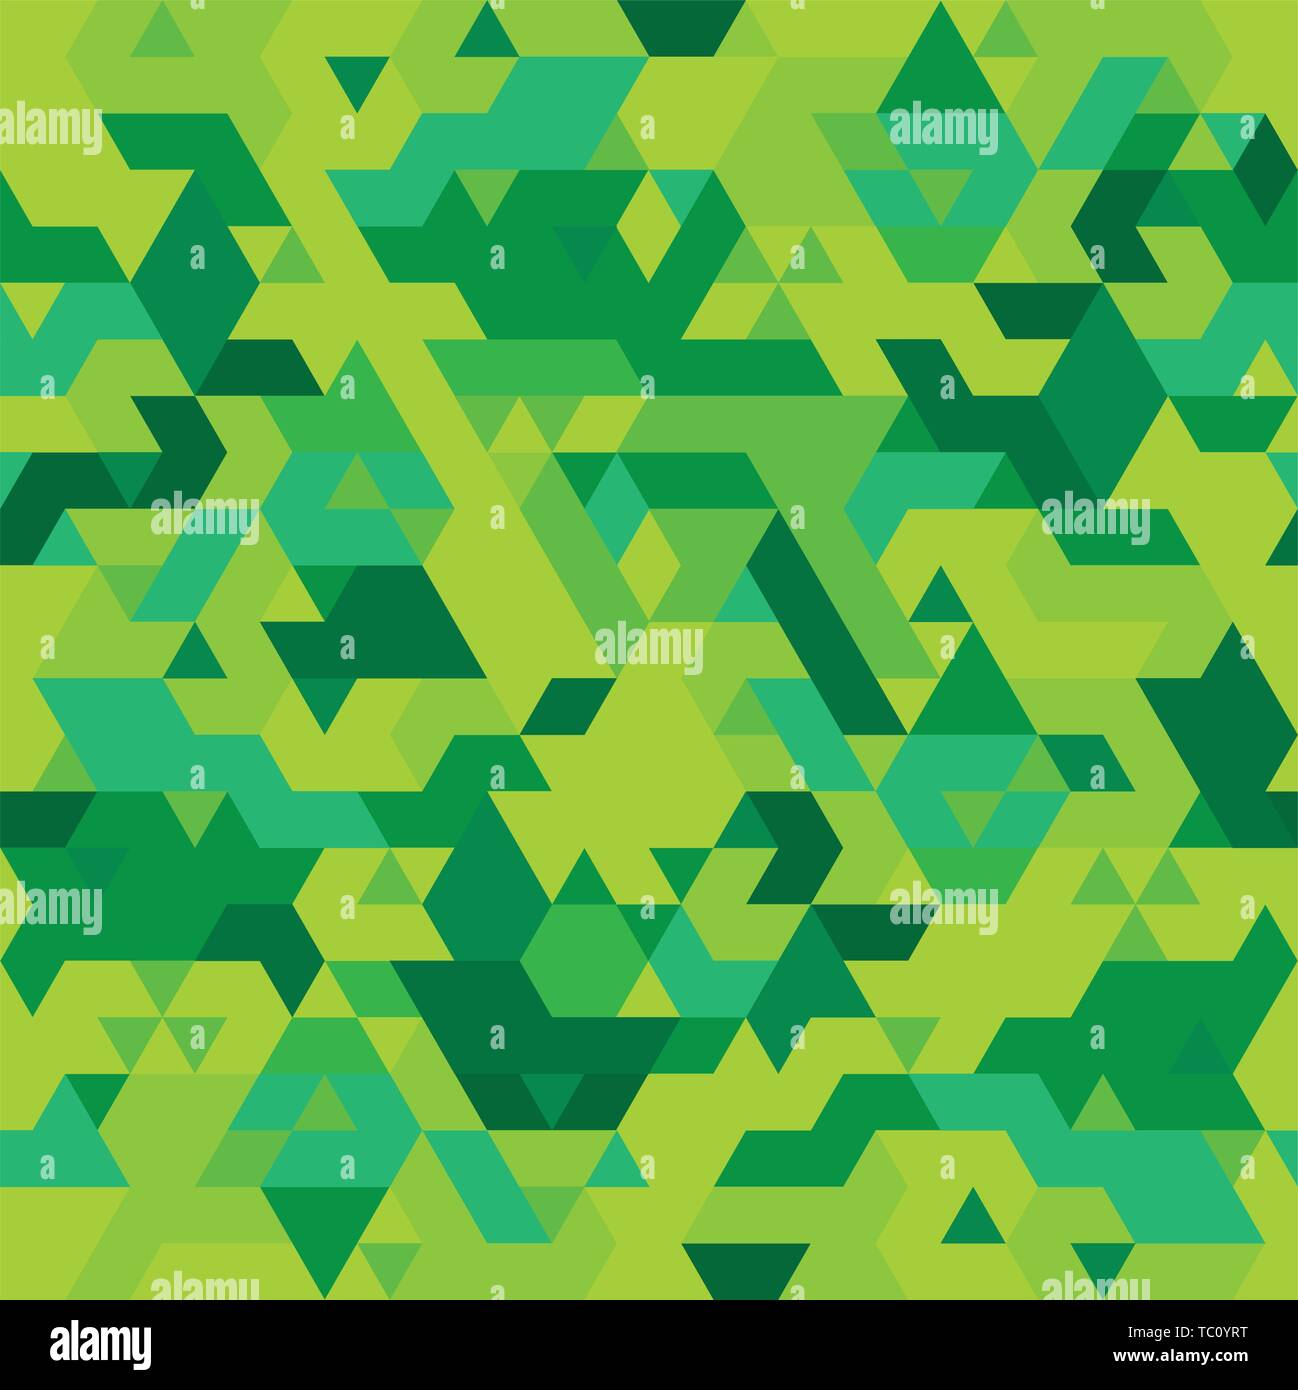 Illustrazione Vettoriale. Geometrica perfetta mimetizzazione pattern in toni di verde. Illustrazione Vettoriale